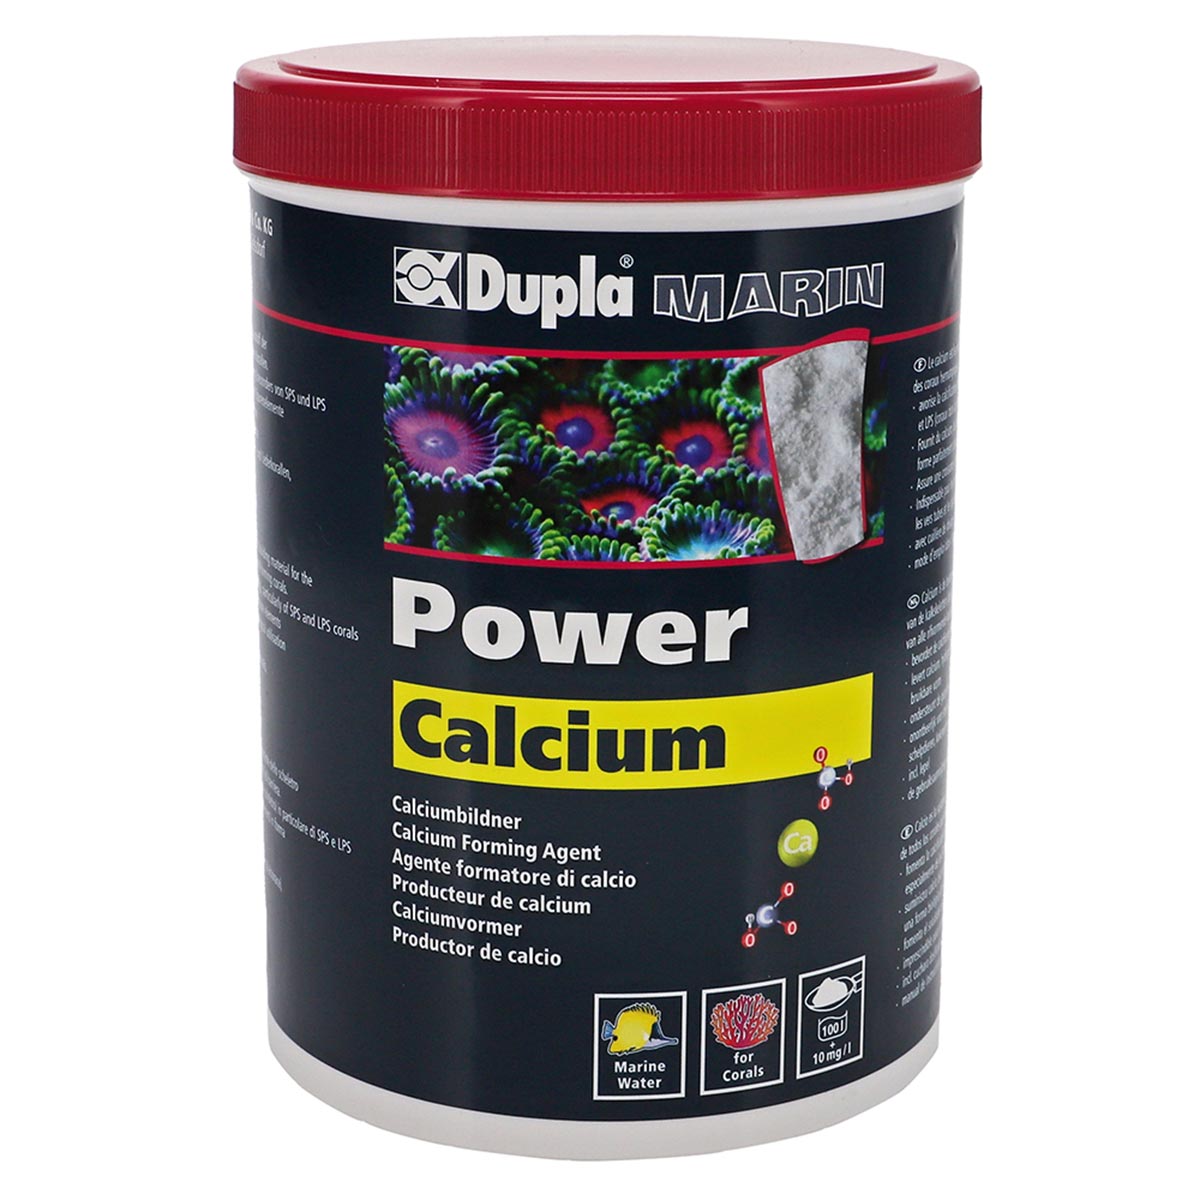 Dupla Marin Power Calcium 800g